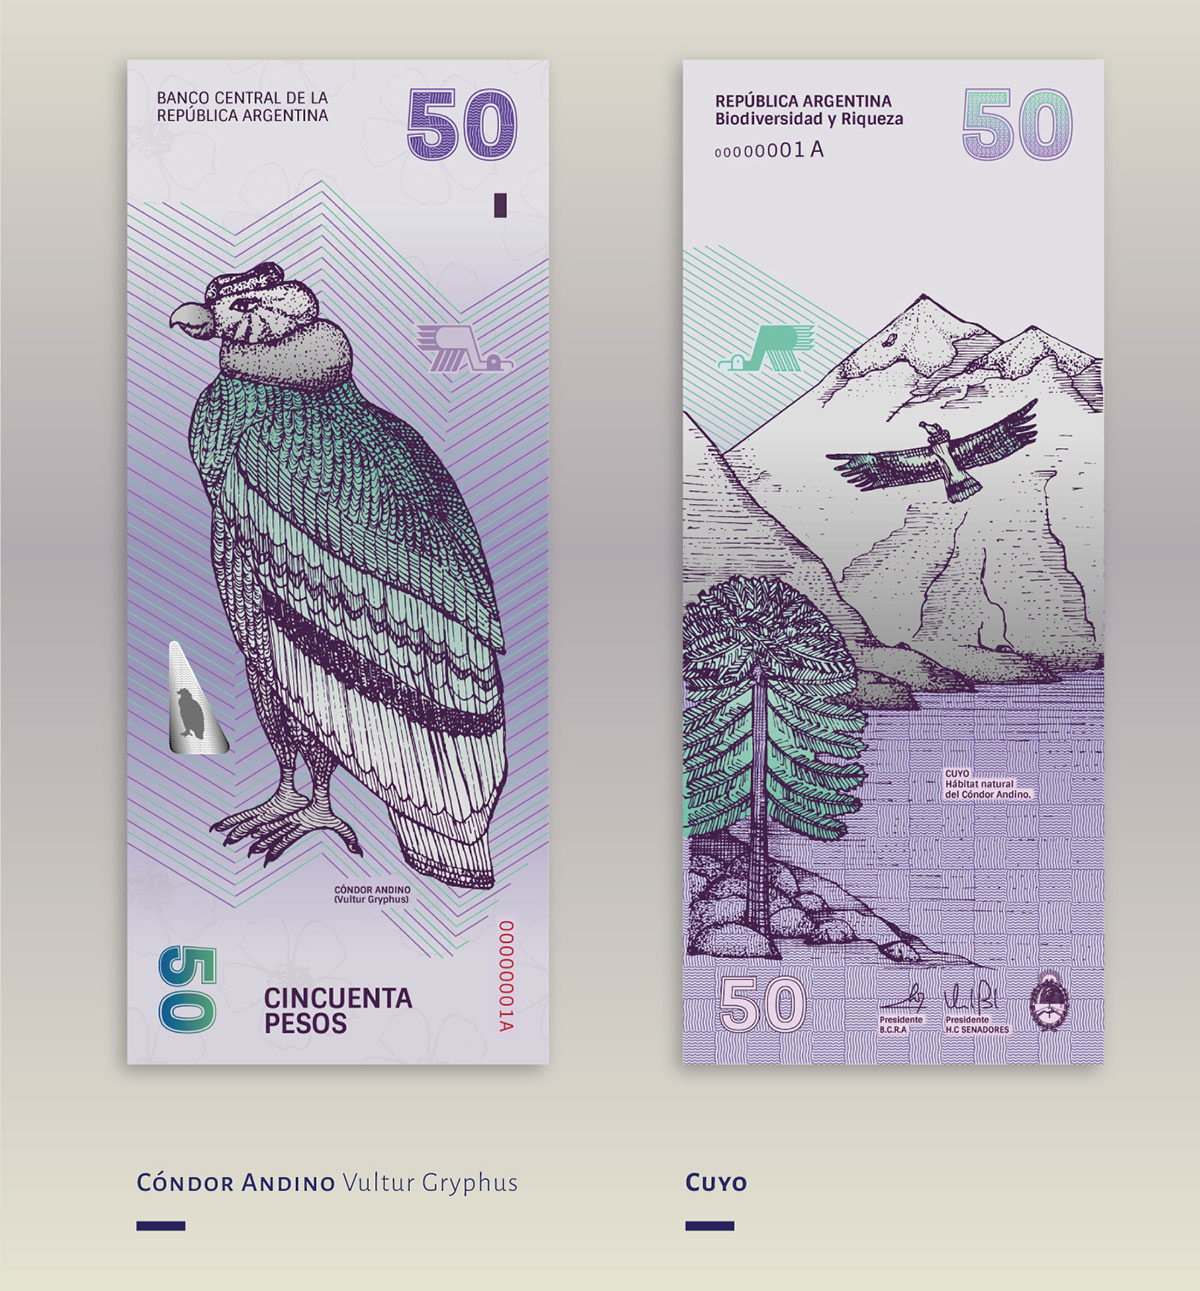 peso-argentino-redesign-com-limao-05